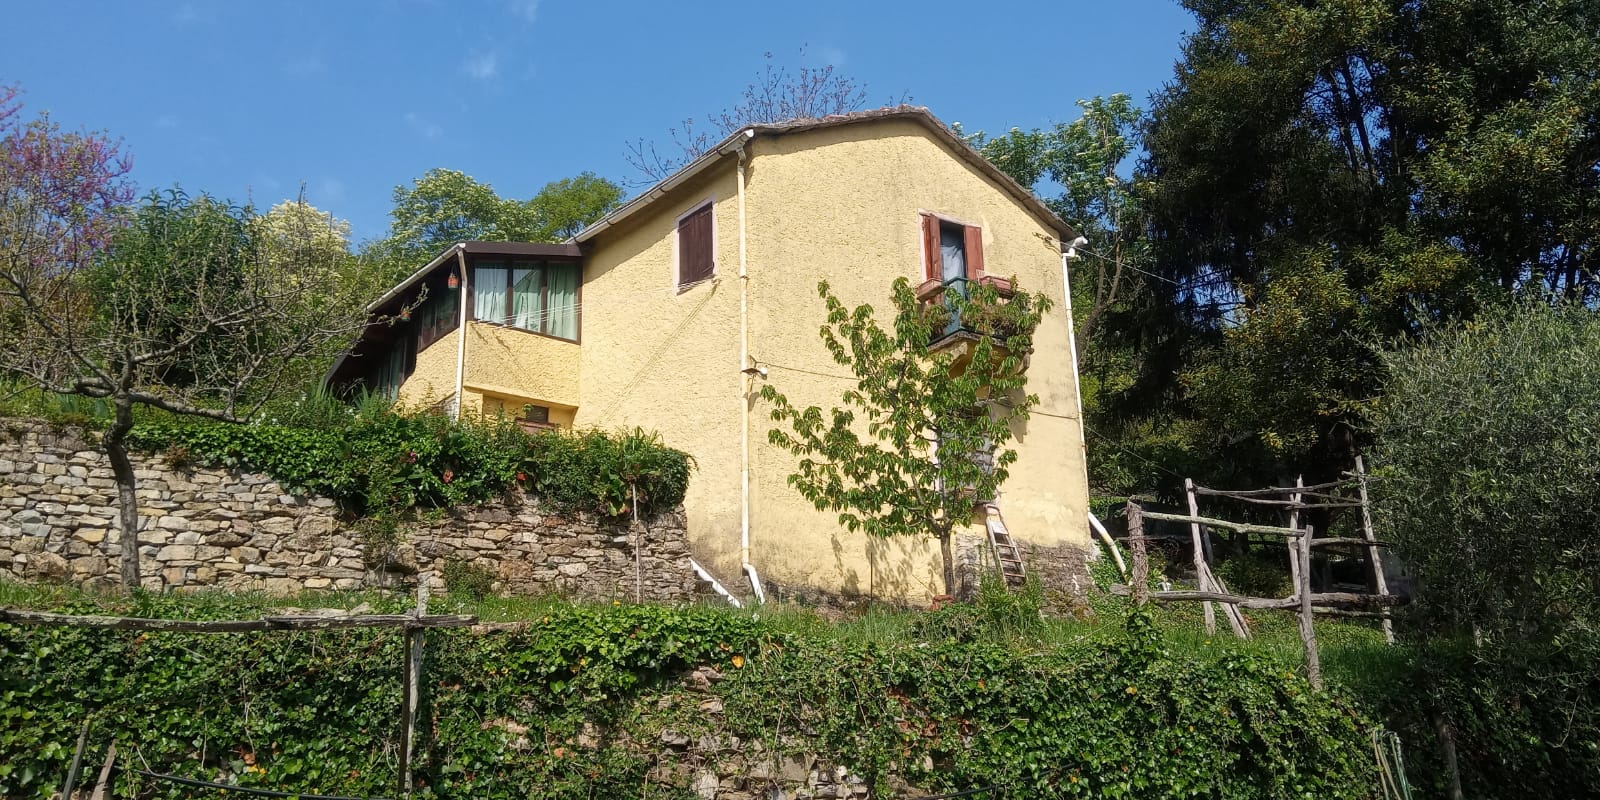 Casa indipendente immersa nella bellissima cornice del Monte di Portofino con ampio terreno